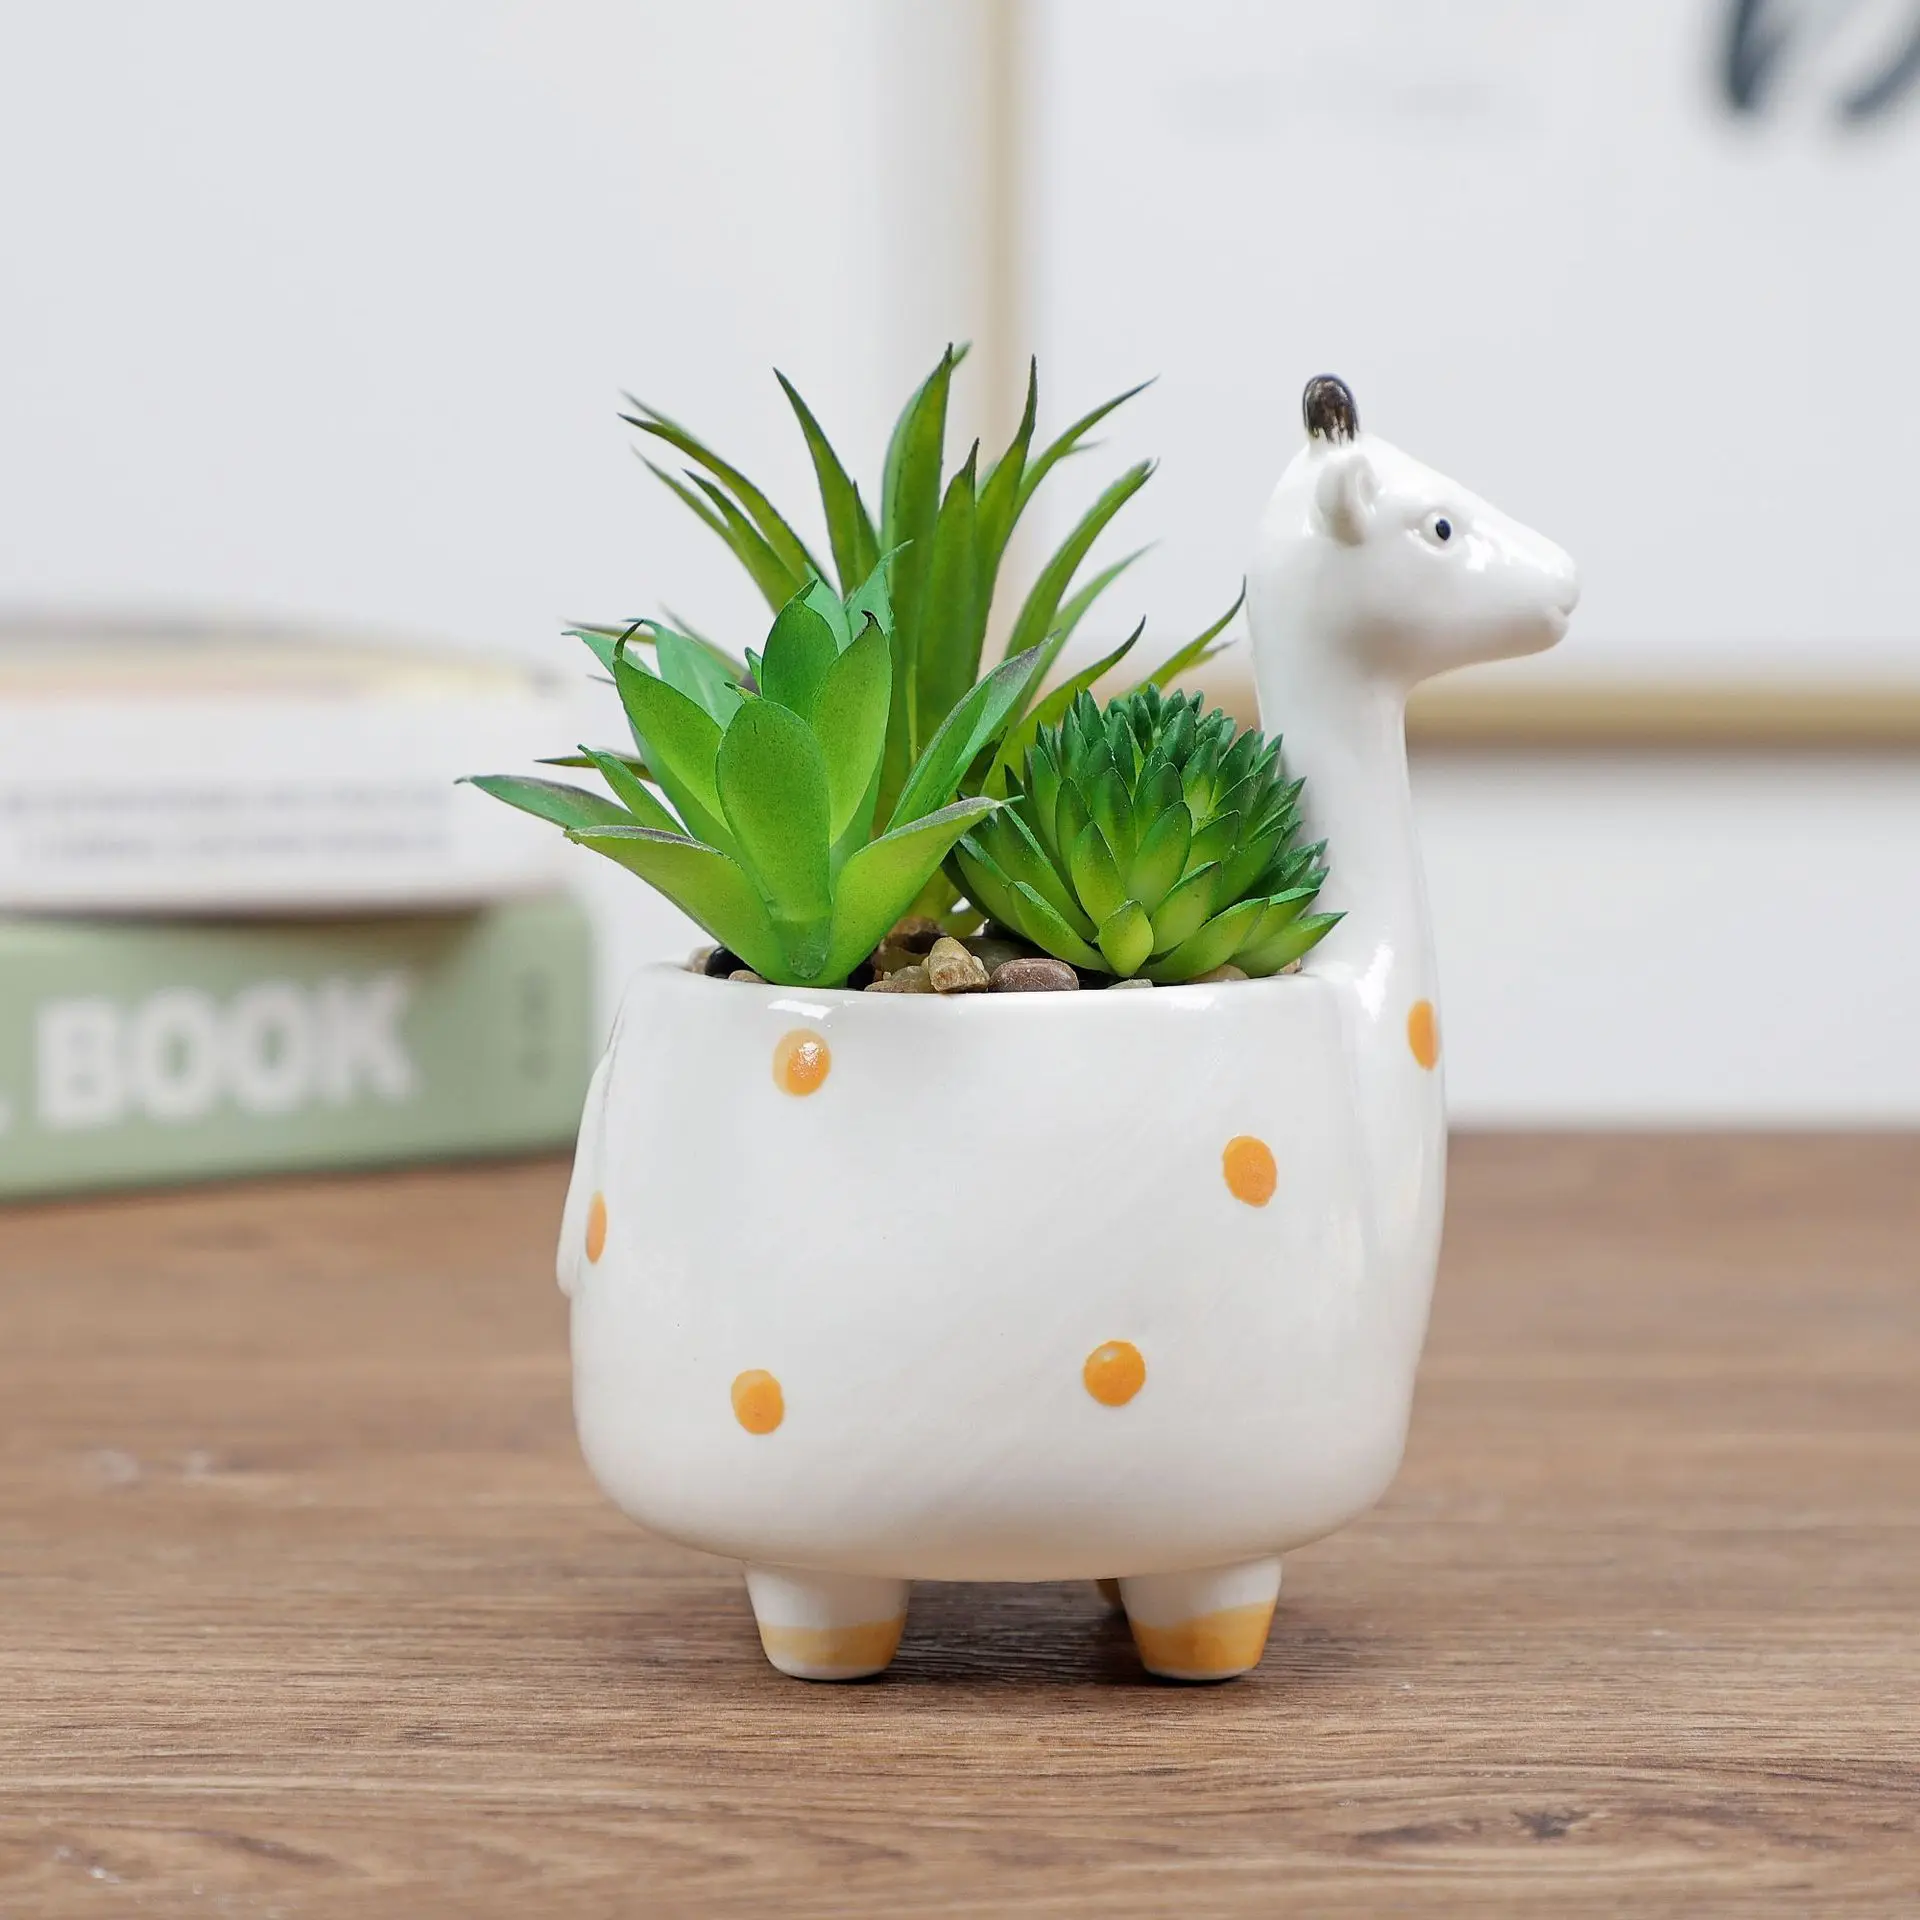 Details about   Cute Animal Flower Pot Ceramic Vase Planter Desktop Ornaments Vase Home Decor 